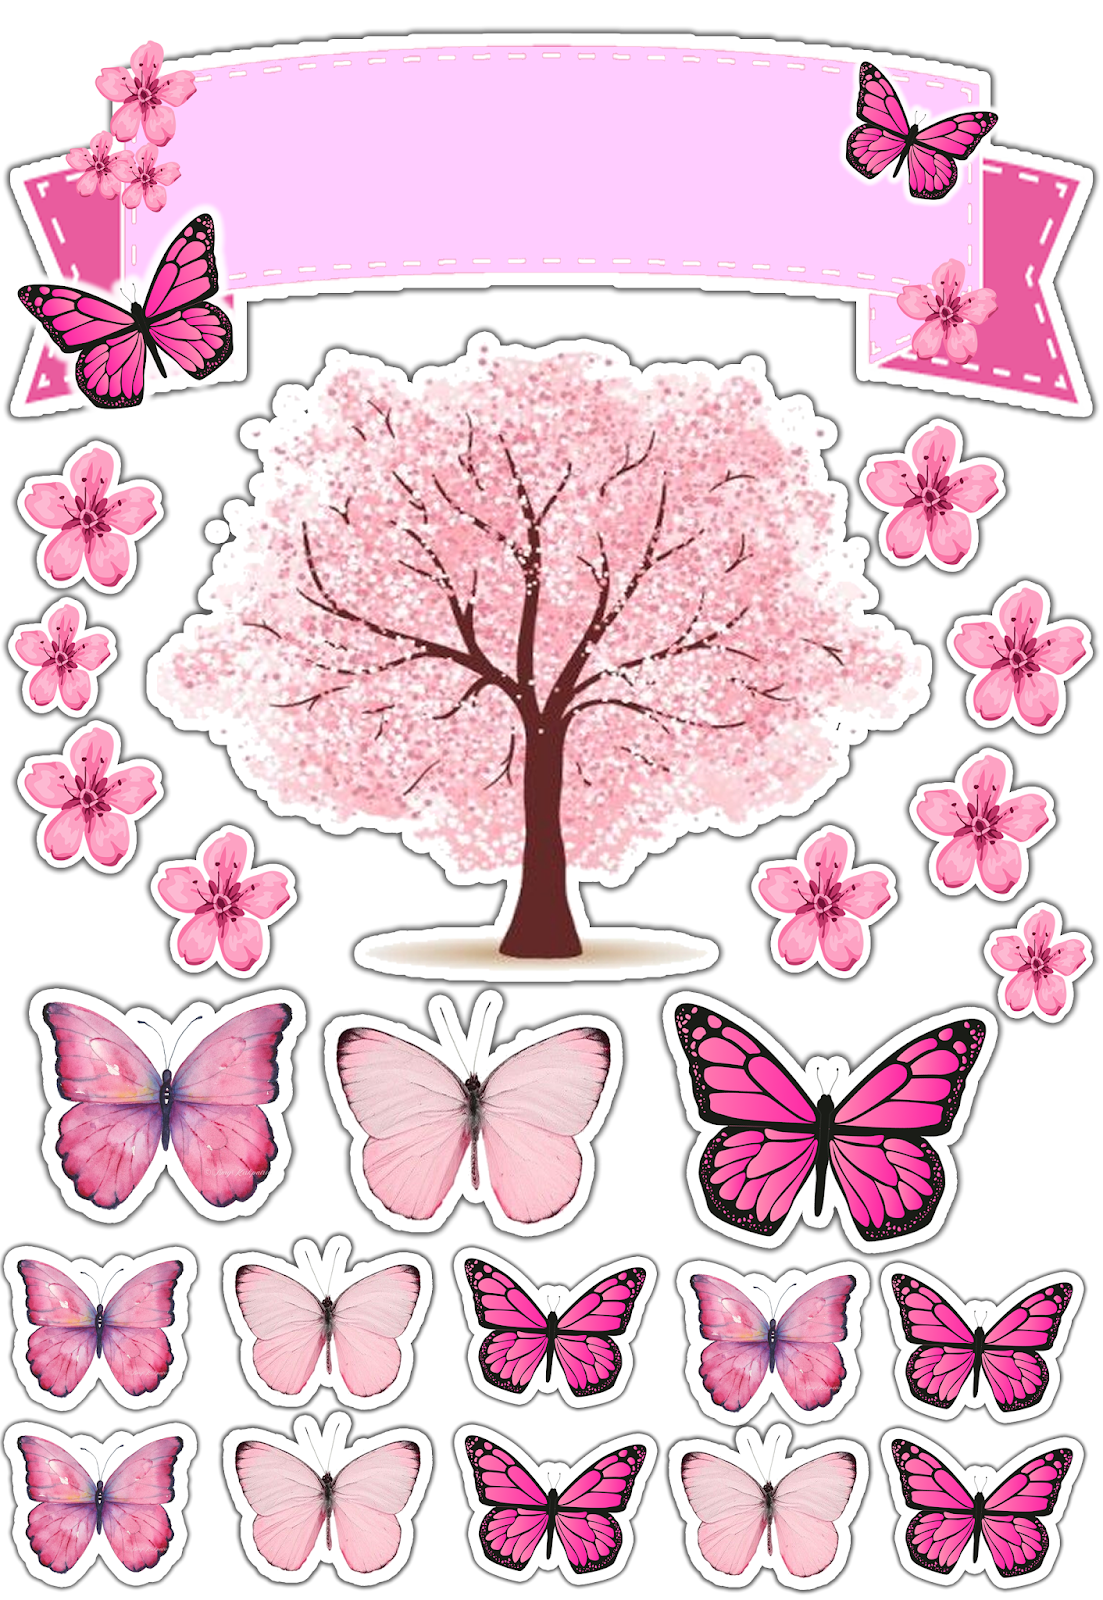 Бабочки розовые распечатать. Розовые бабочки. Бабочки пищевая печать. Розовые бабочки на вафельной бумаге. Макет бабочек для торта розовые.